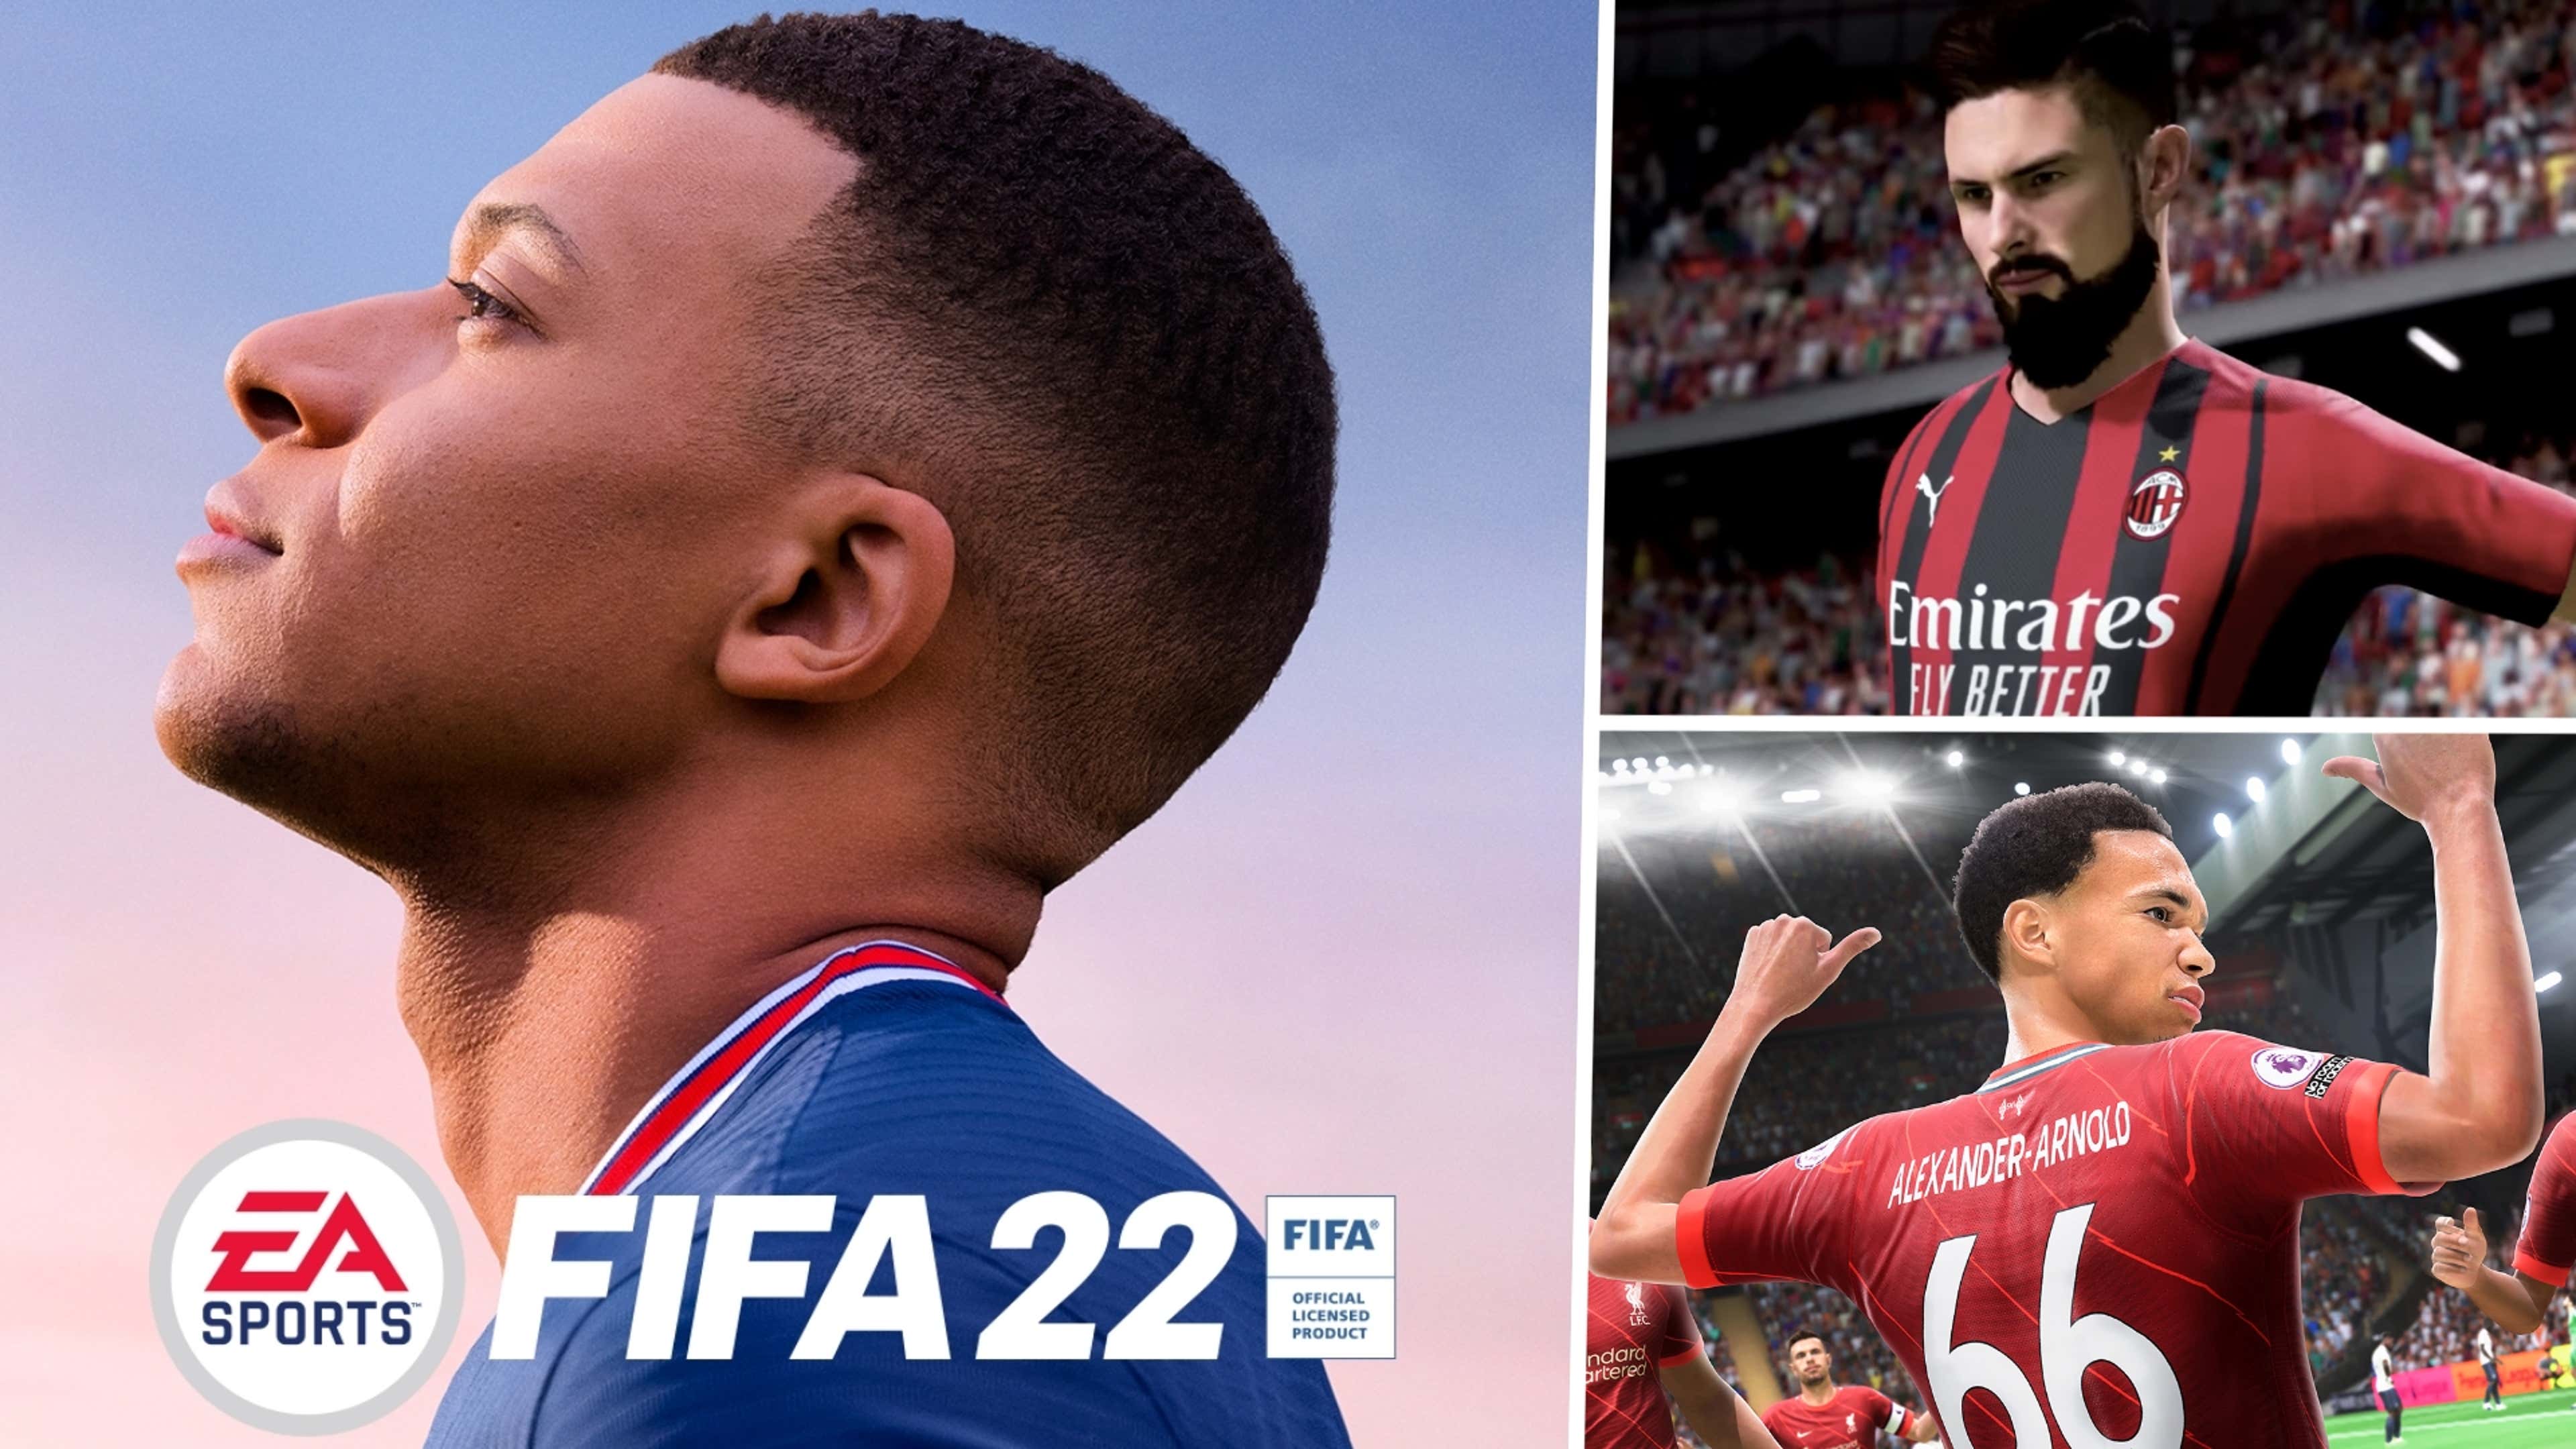 FIFA 22 Vs eFootball 2022 PS3 